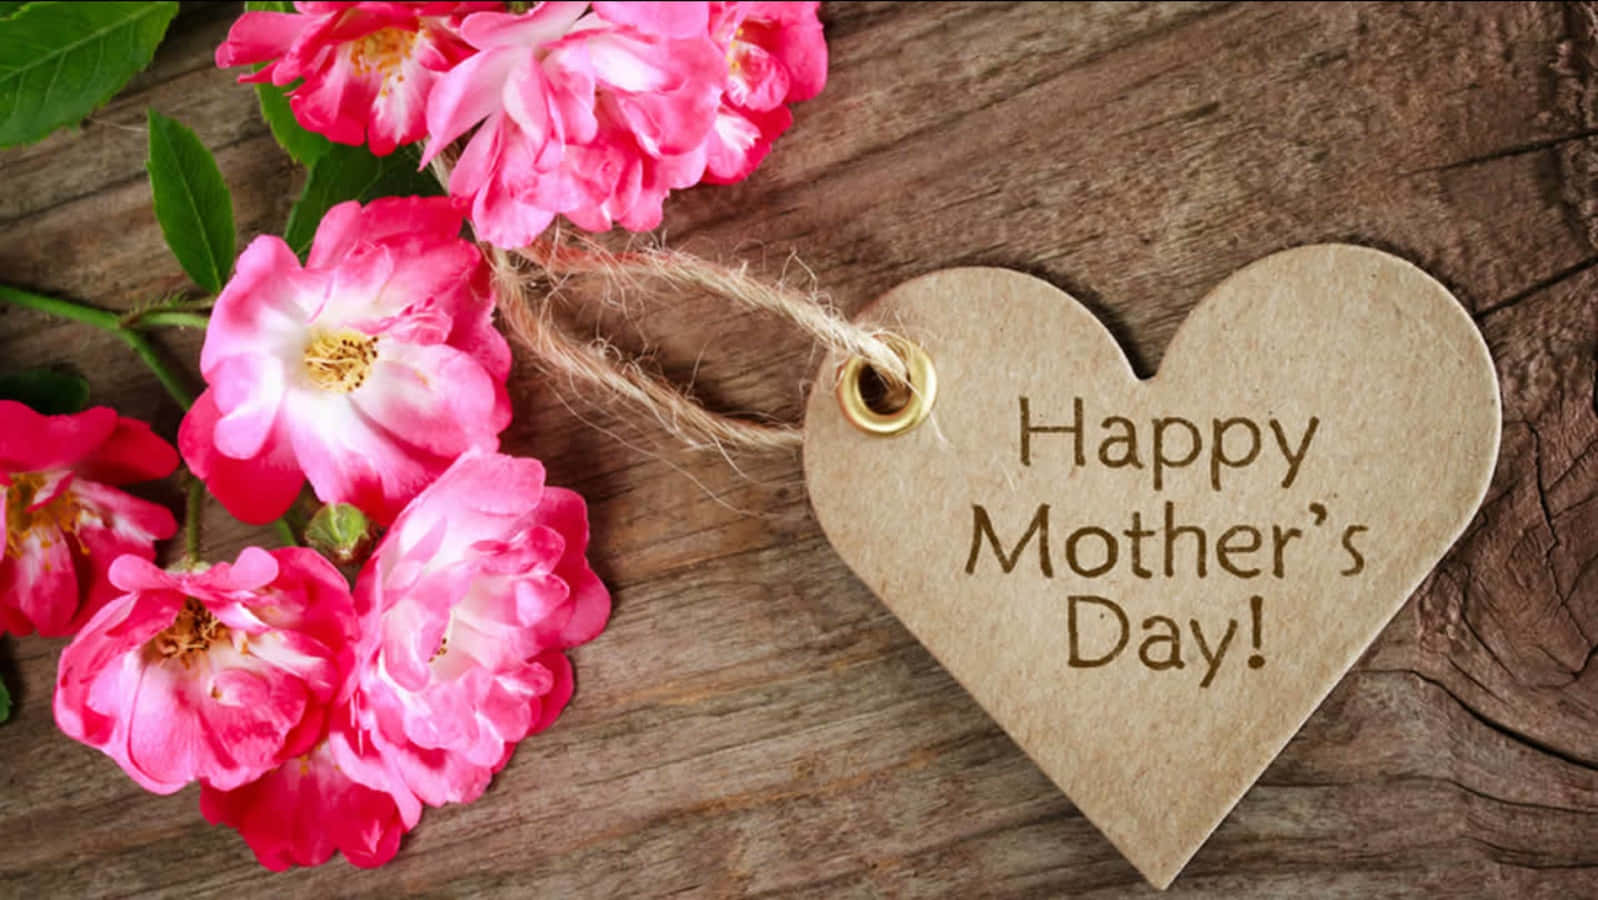 Celebreeste Feliz Dia Das Mães Enviando Seu Amor E Desejos Para A Mulher Especial Em Sua Vida.